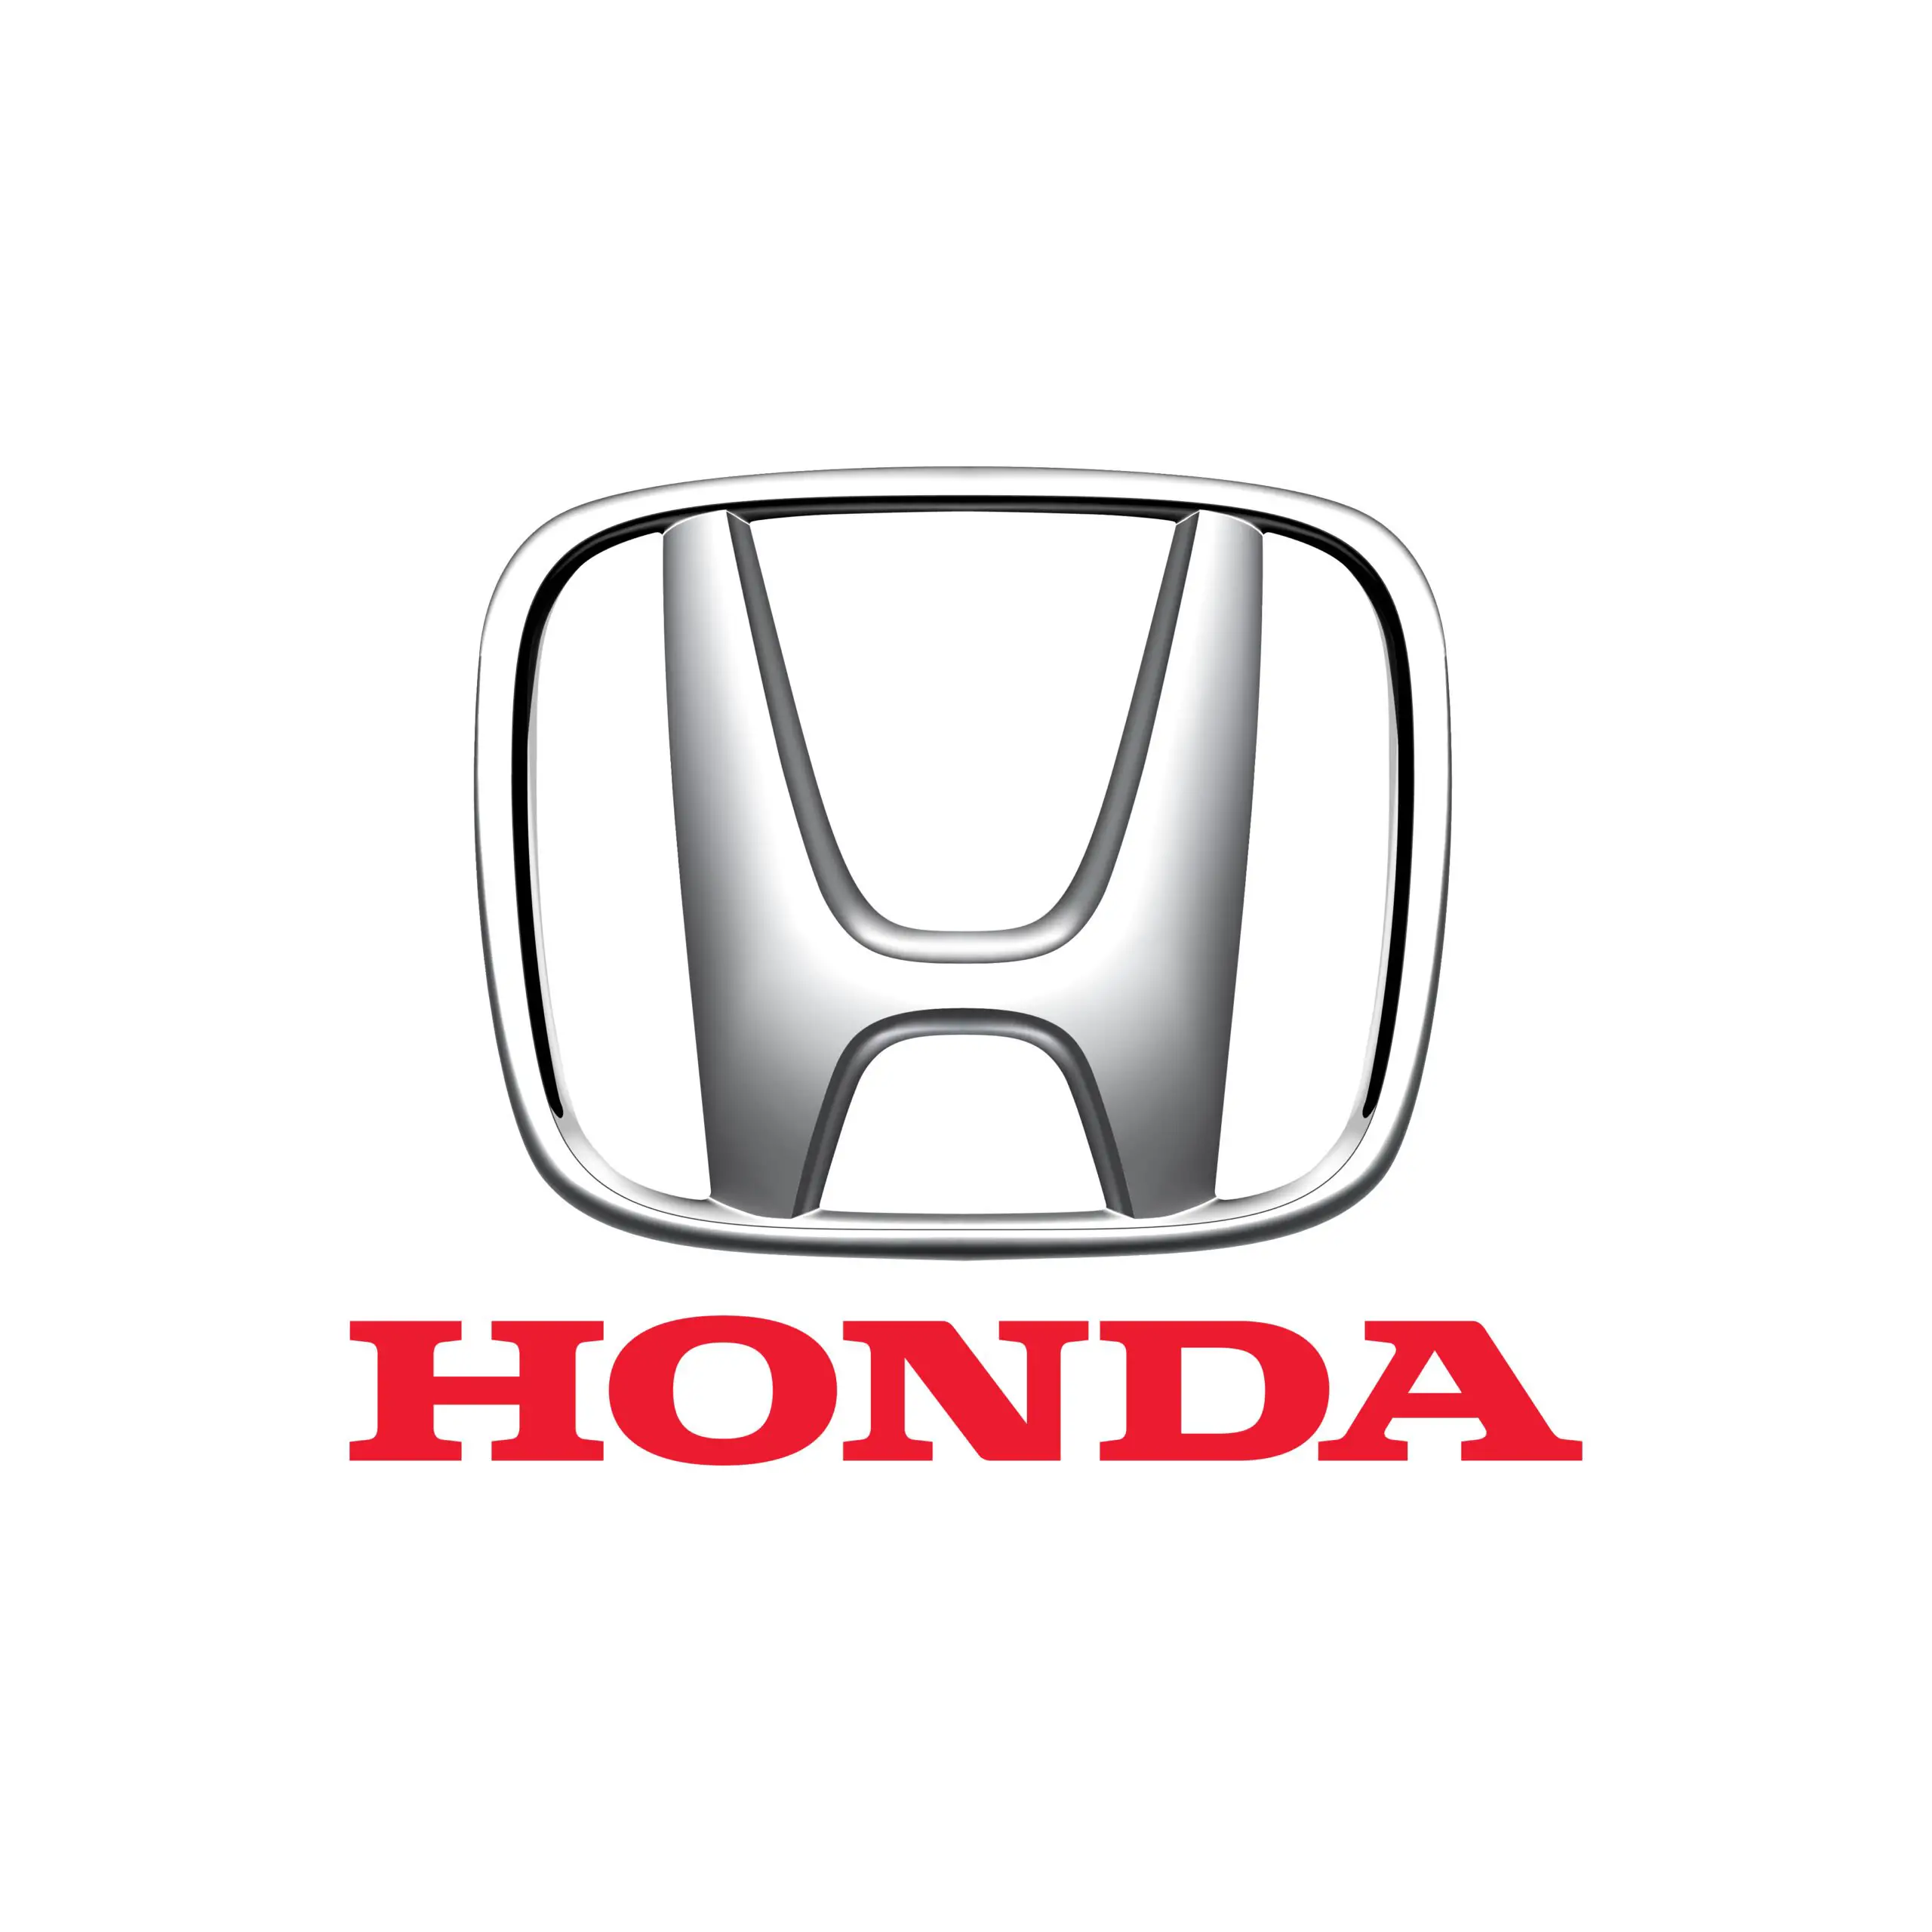 Honda service centre in Dallas